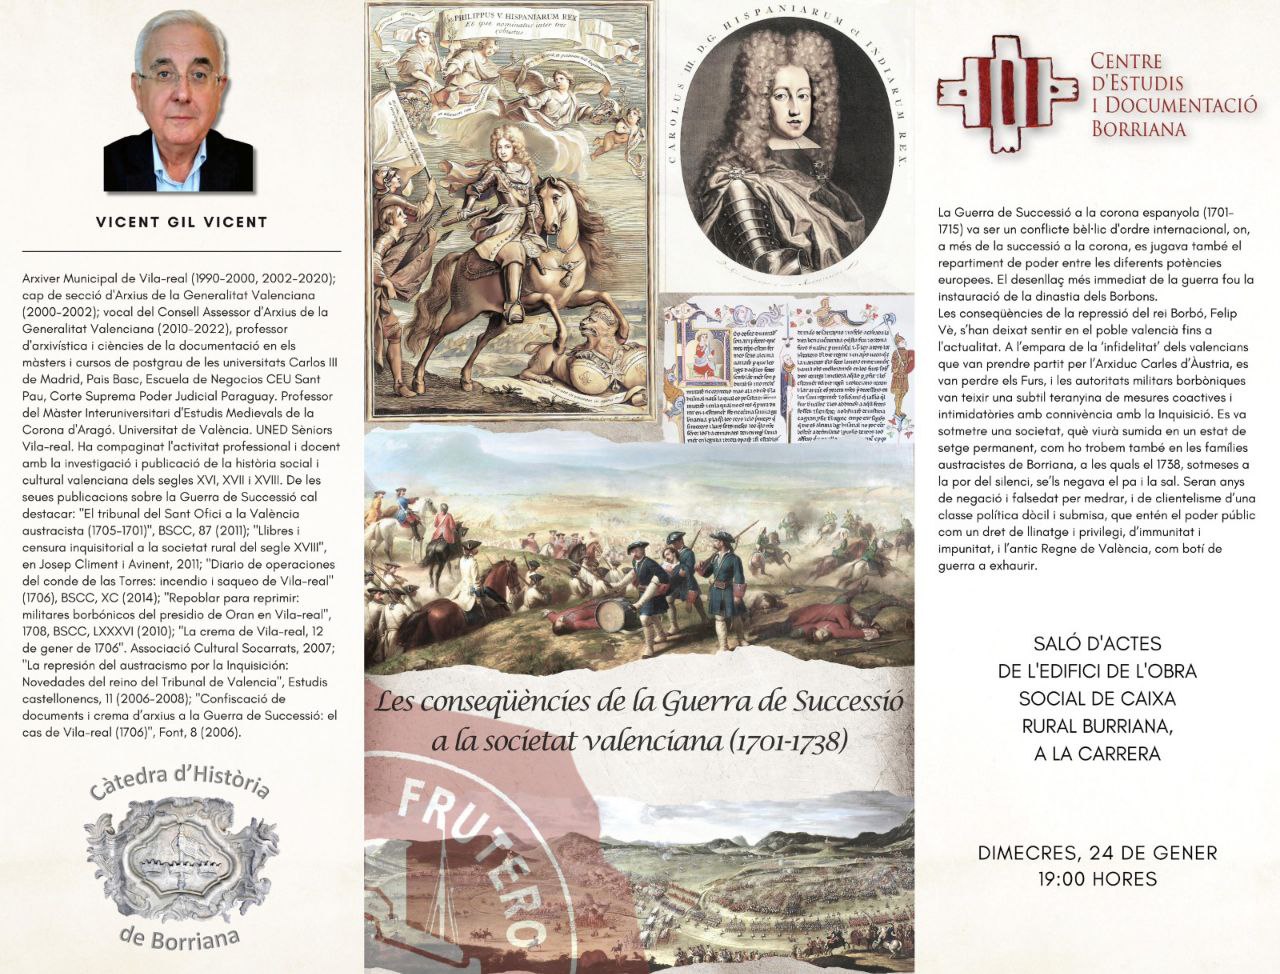 Vicent Gil: Les conseqüències de la Guerra de Successió a la societat valenciana (1701-1738)